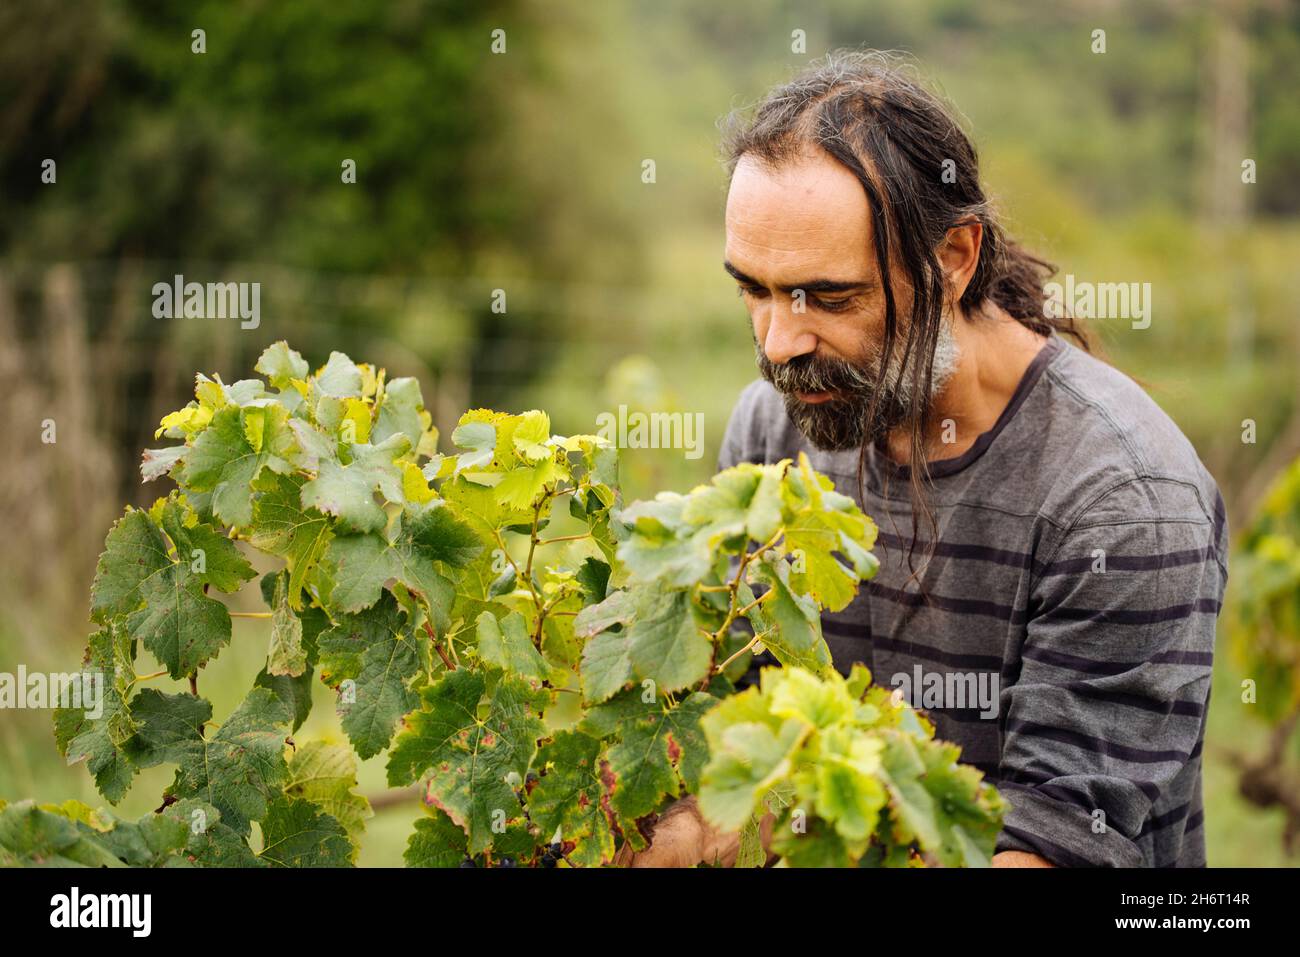 Agriculteur récoltant du raisin dans un vignoble pendant la récolte du raisin. Banque D'Images